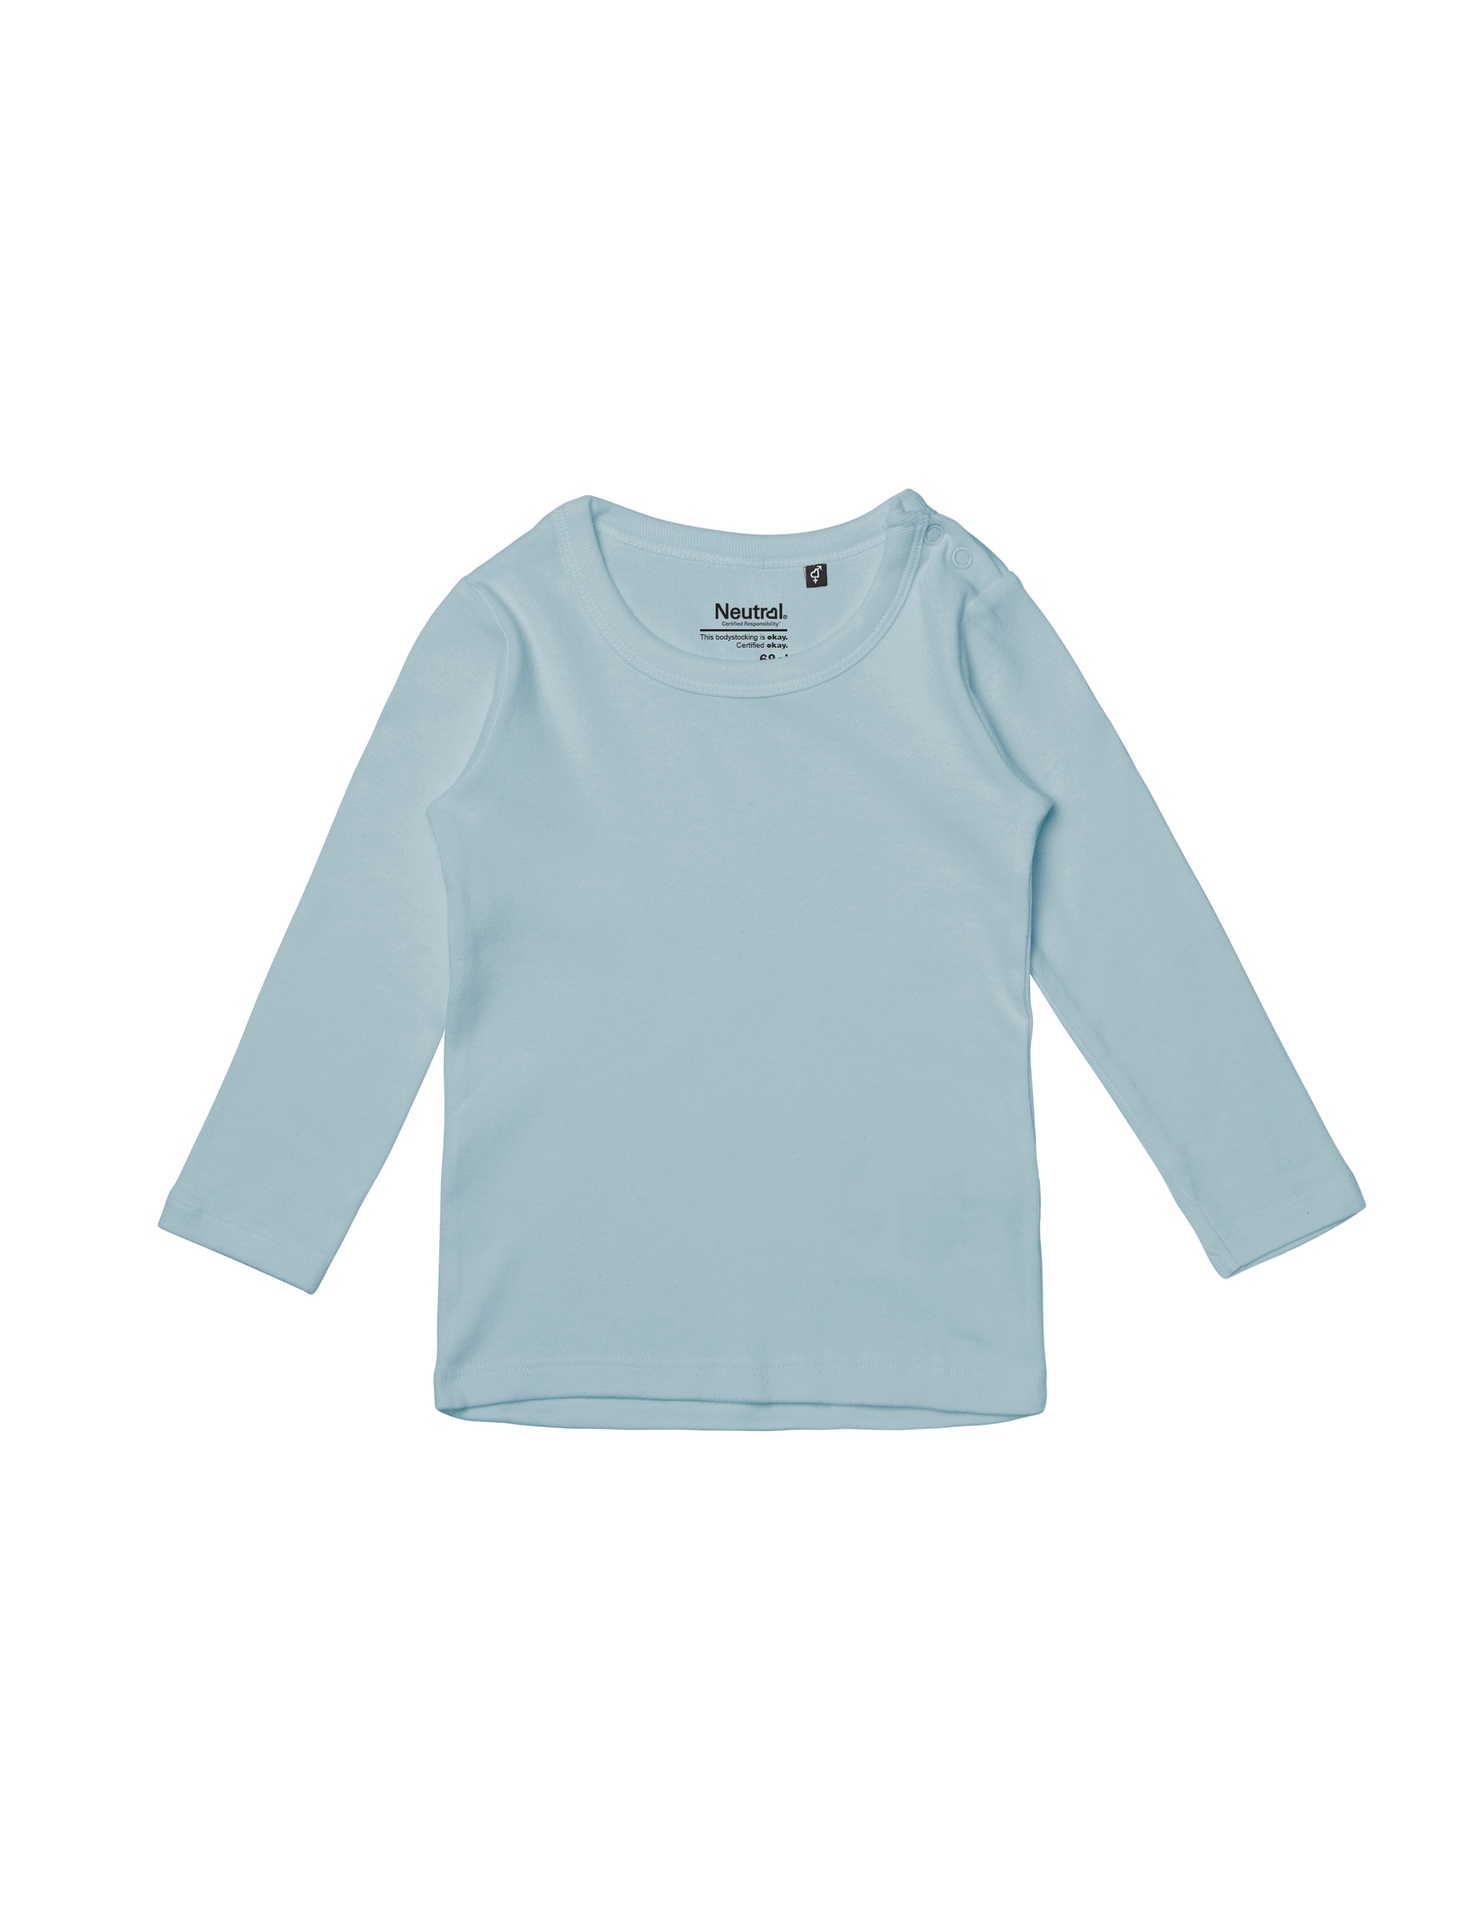 [PR/05632] Babies Long Sleeve T-Shirt (Light Blue 69, 86 cm)